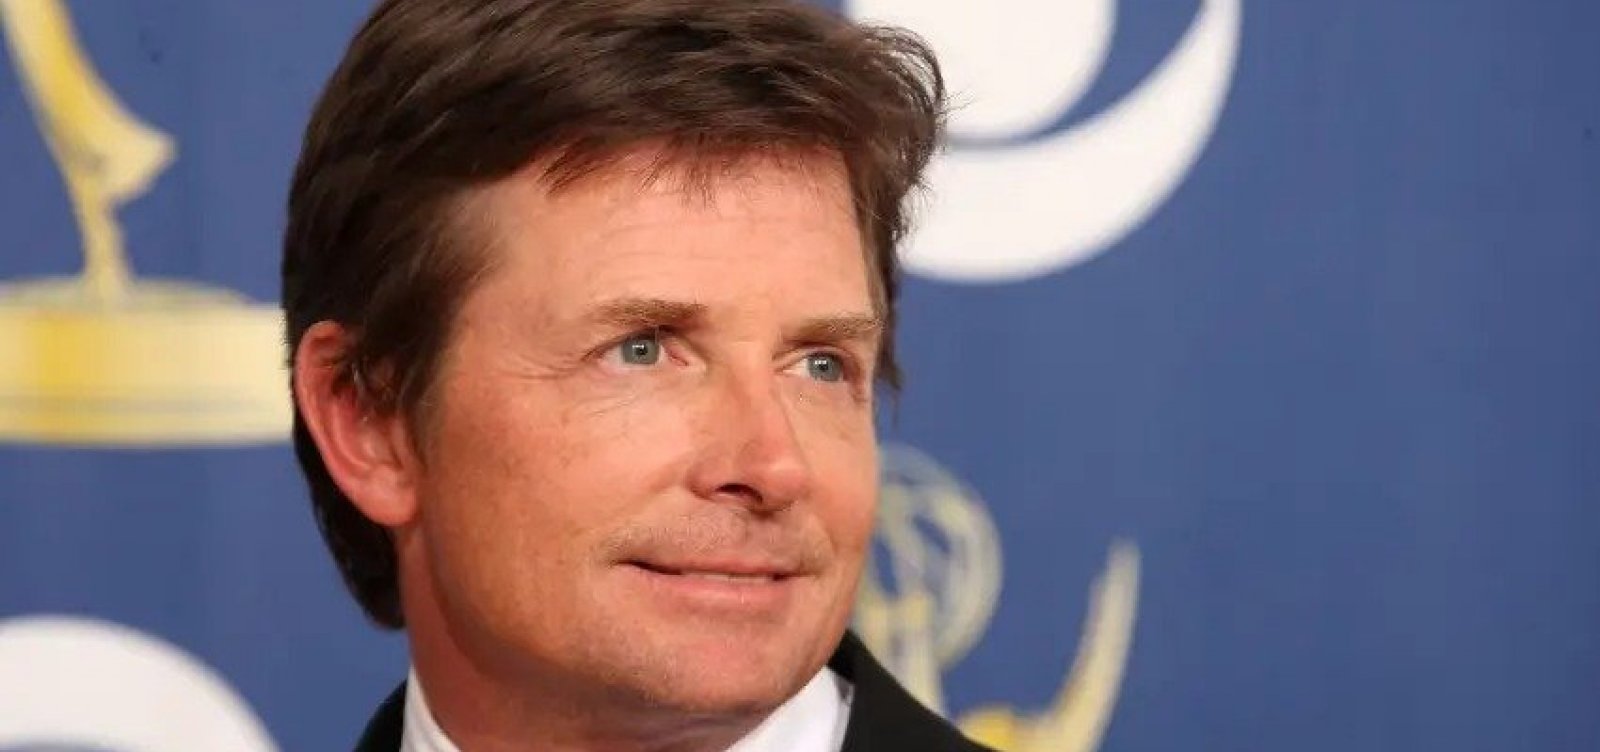 Michael J. Fox, de "De volta para o futuro", será homenageado pelo Oscar com prêmio honorário